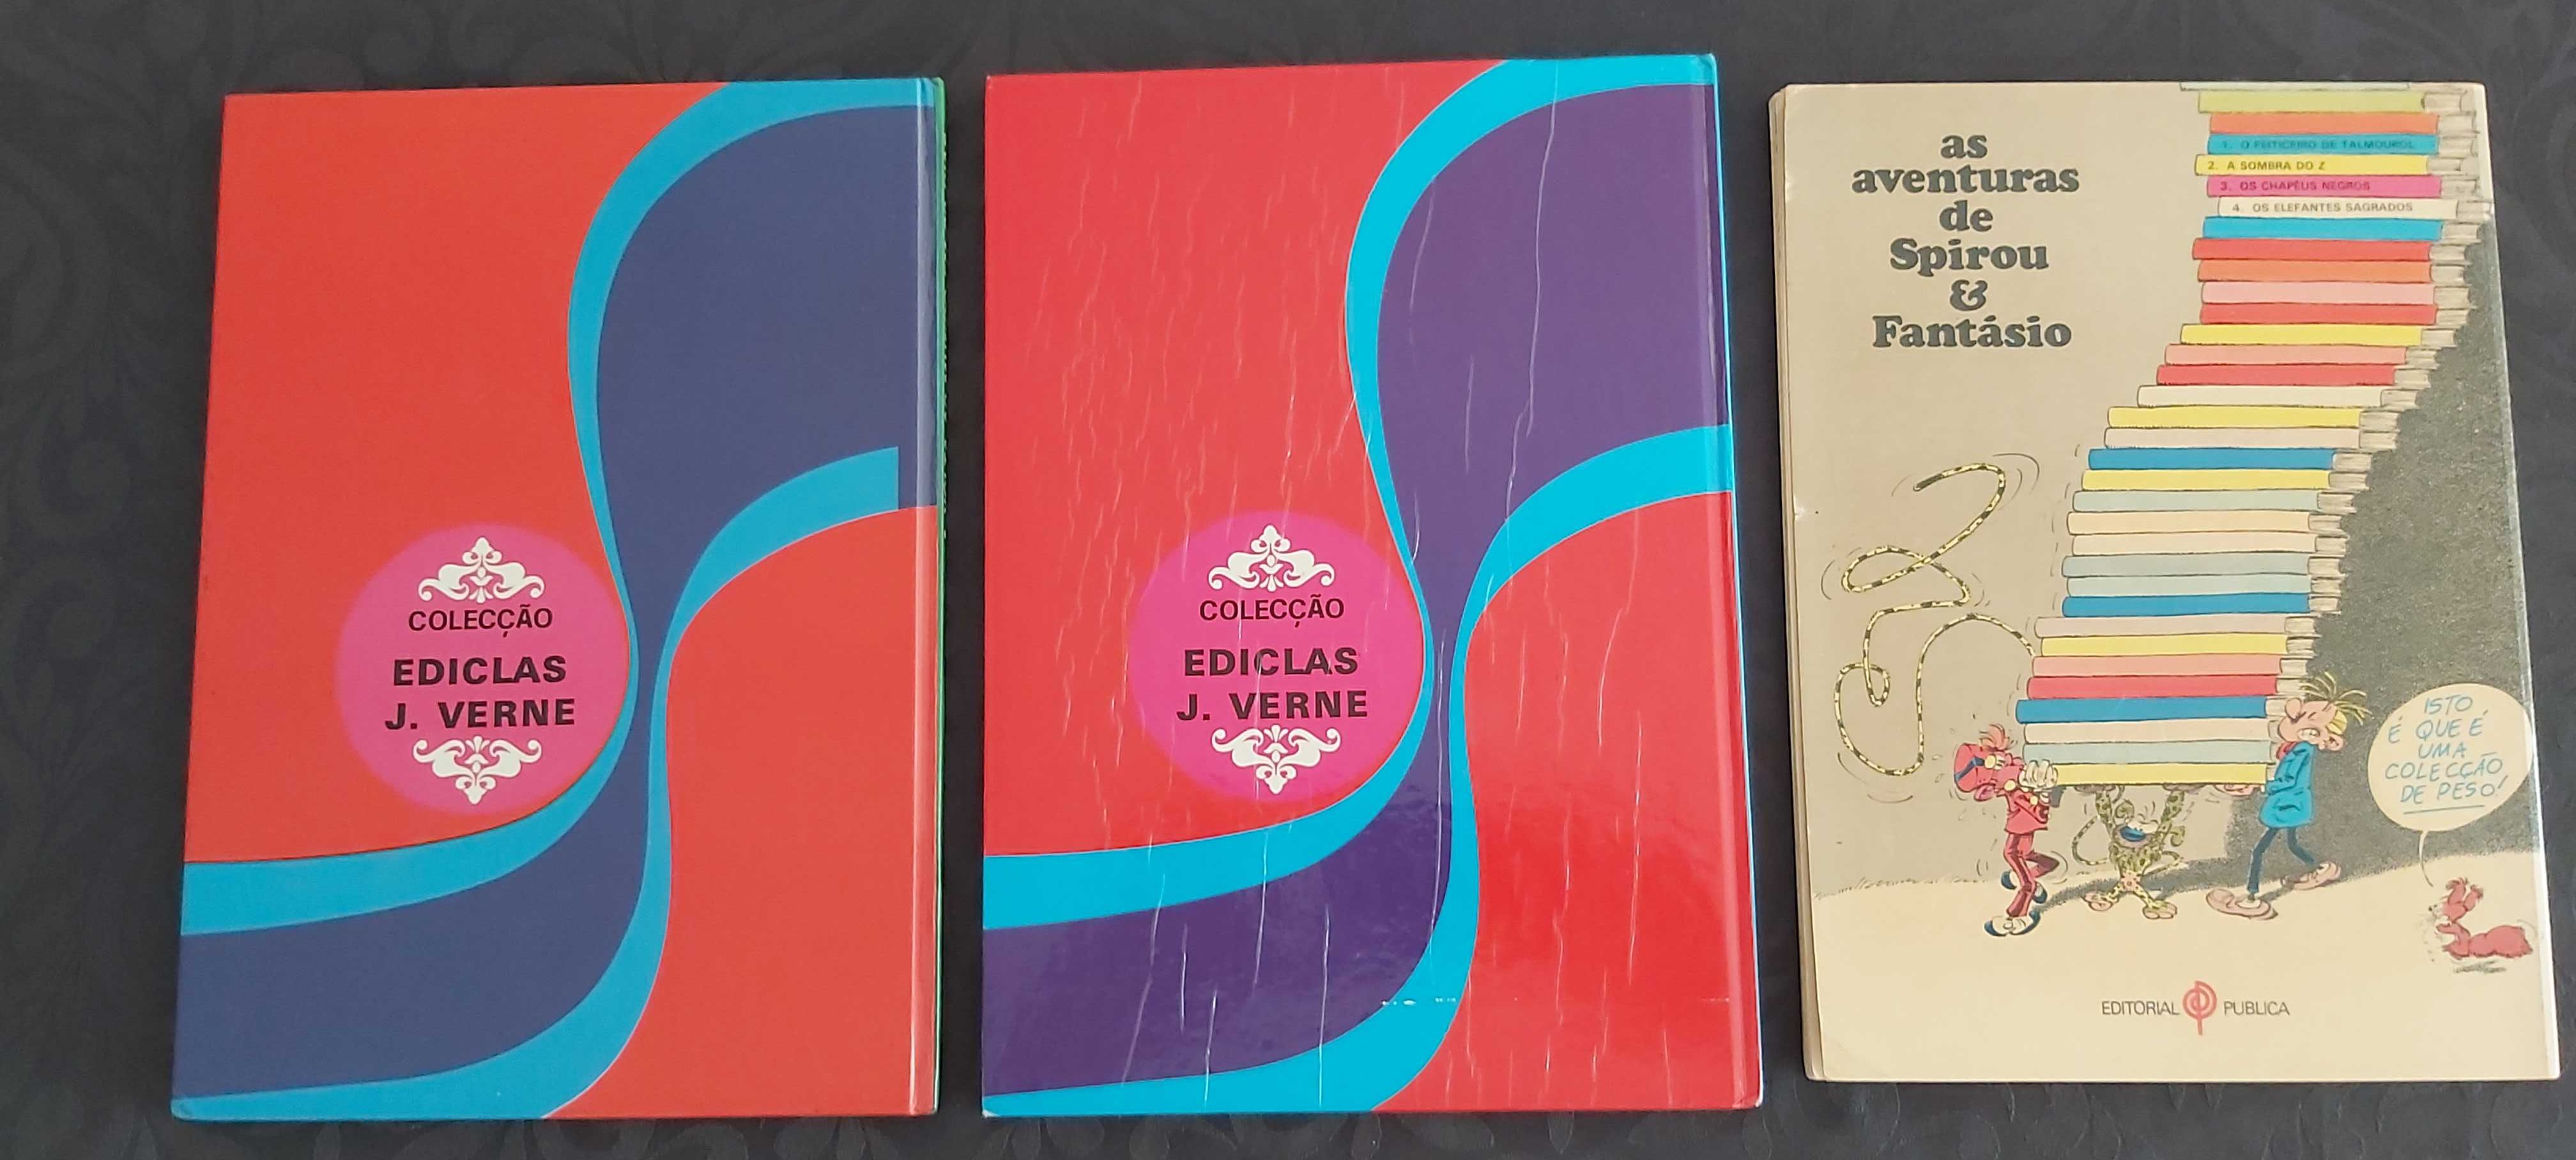 Livros BD antigos: Spirou e Fantásio / Júlio Verne